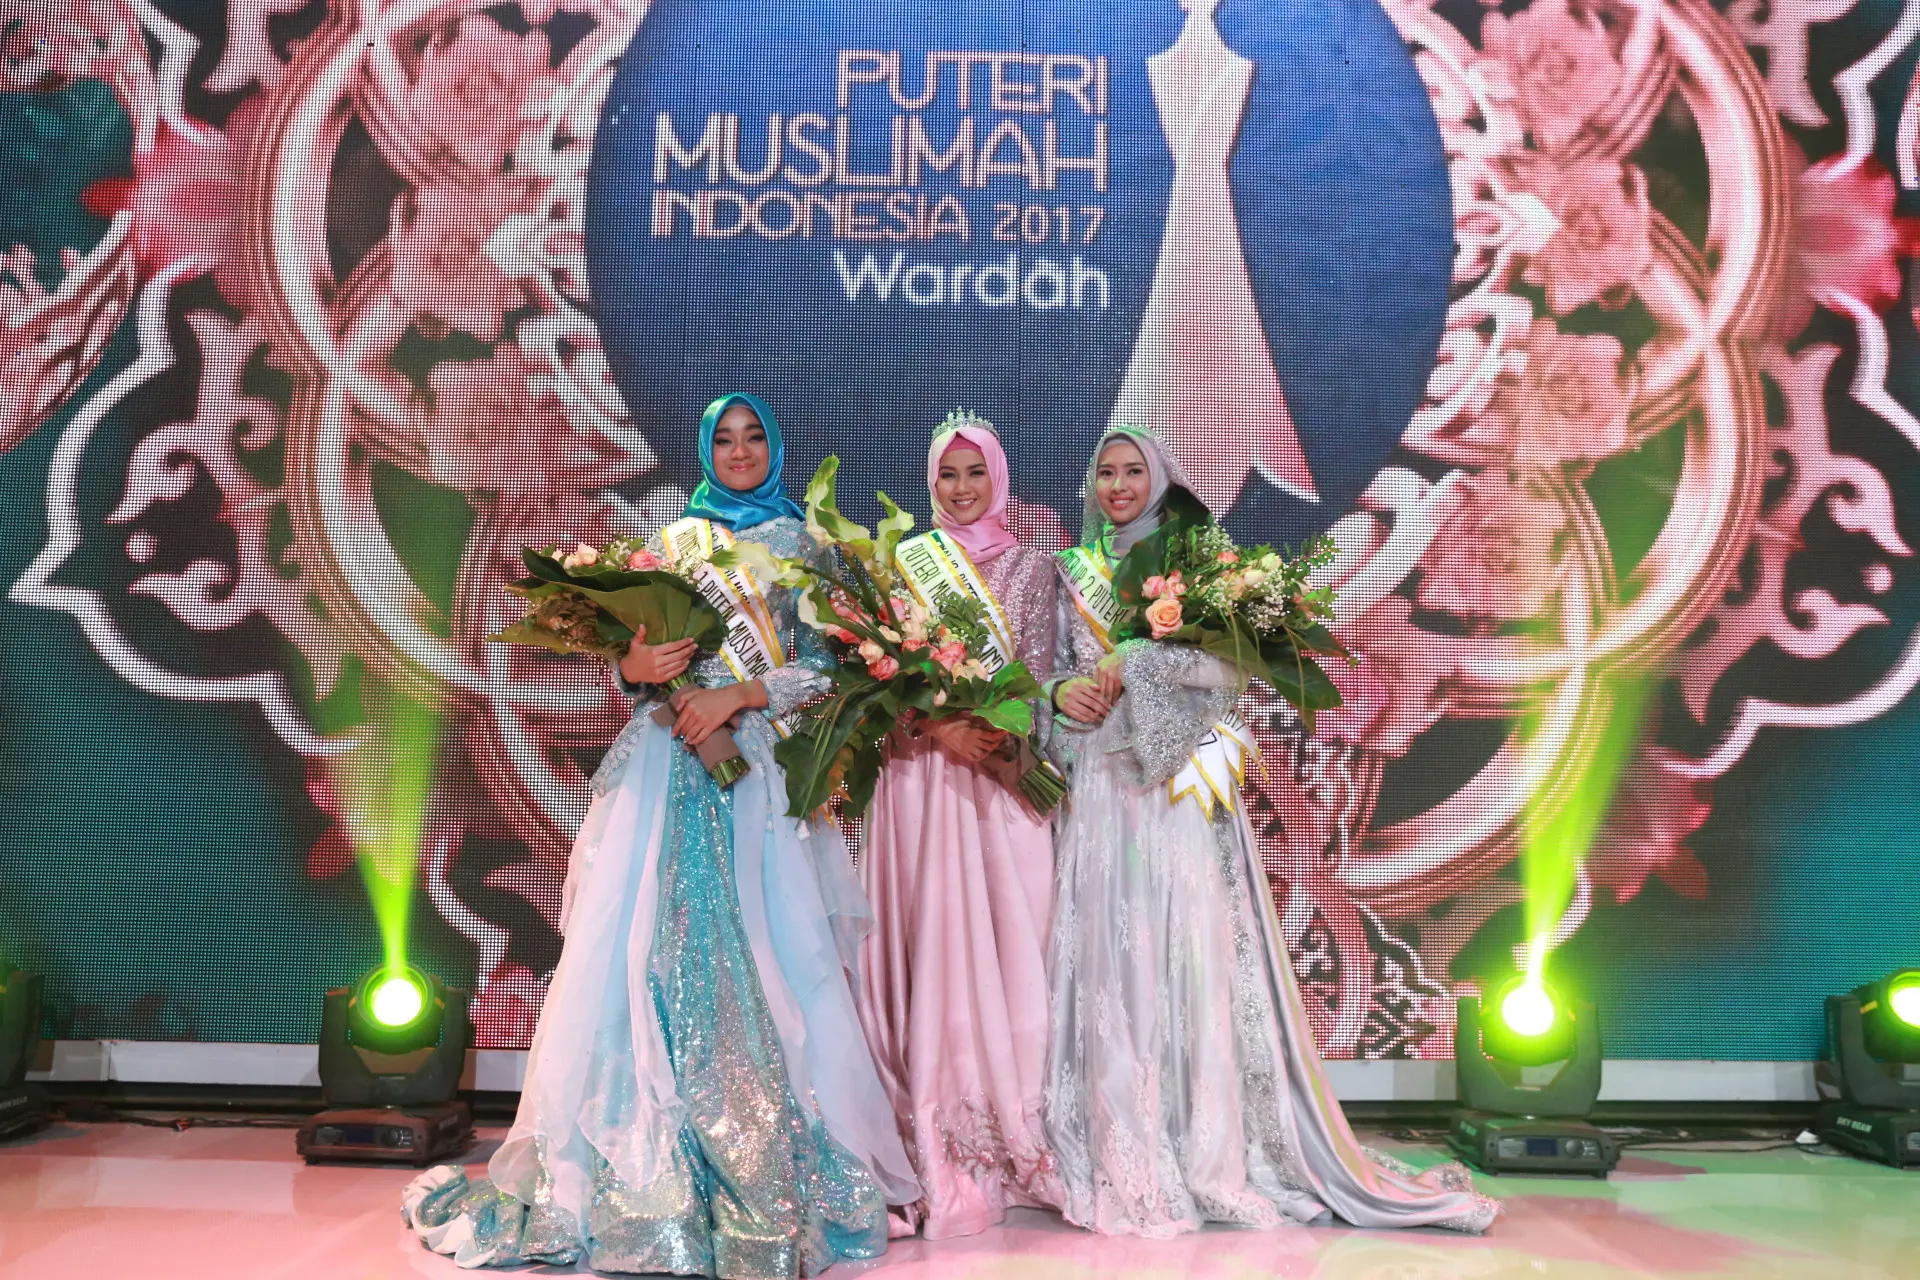 Syifa Fatimah, Puteri Muslimah Indonesia 2017 bersama para runner up 1 dan 2. (Adrian Putra/Bintang.com)